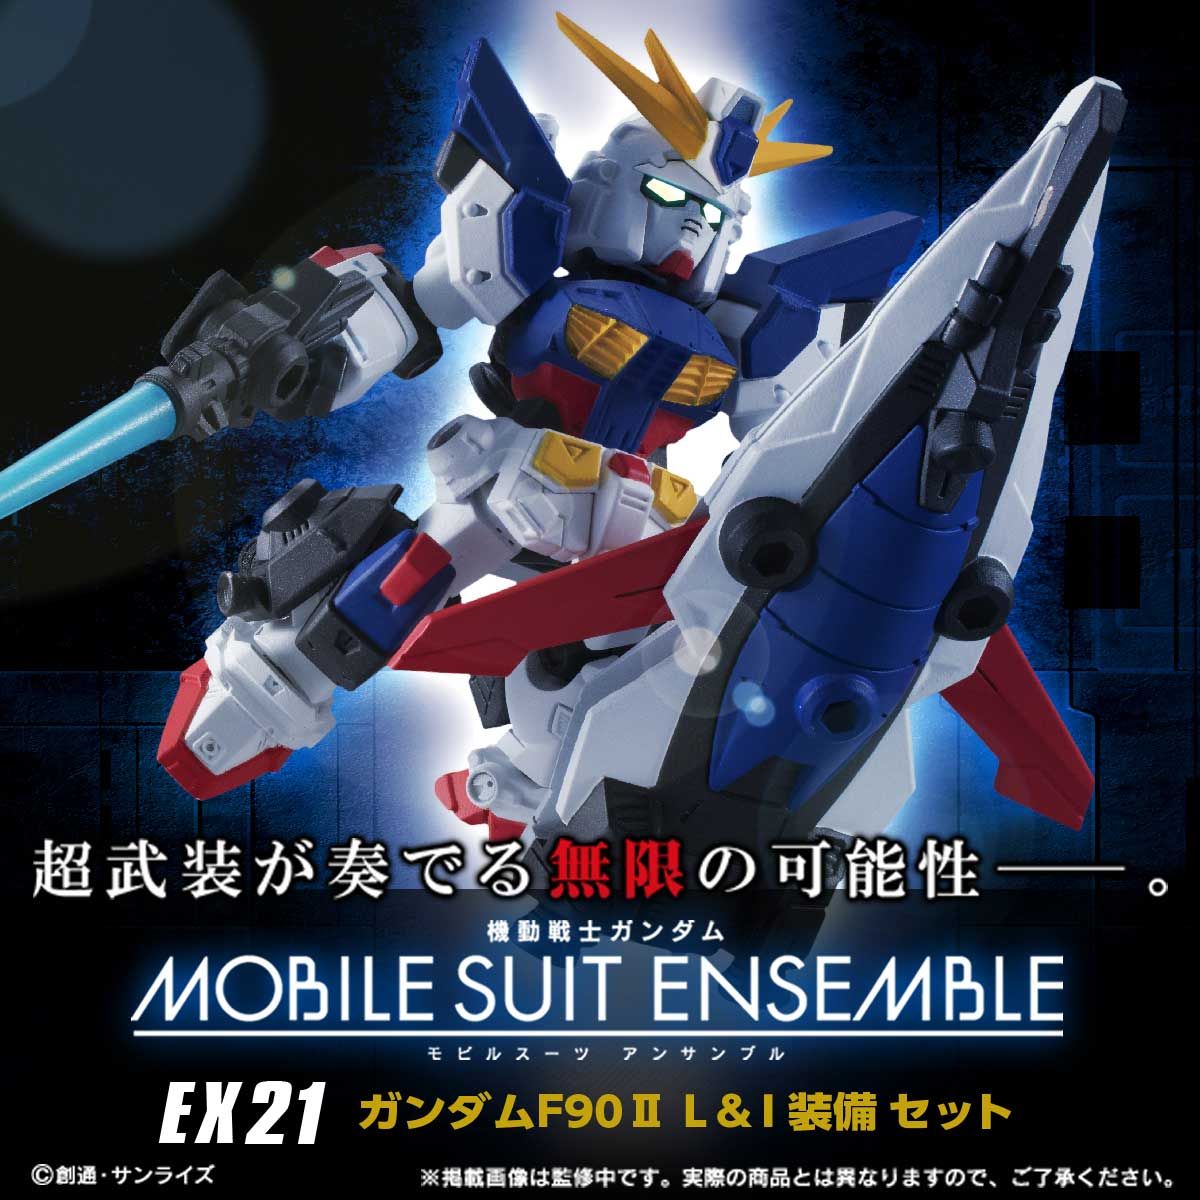 【限定販売】MOBILE SUIT ENSEMBLE『EX21 ガンダムF90 II（L＆I装備セット）』完成品フィギュア-001